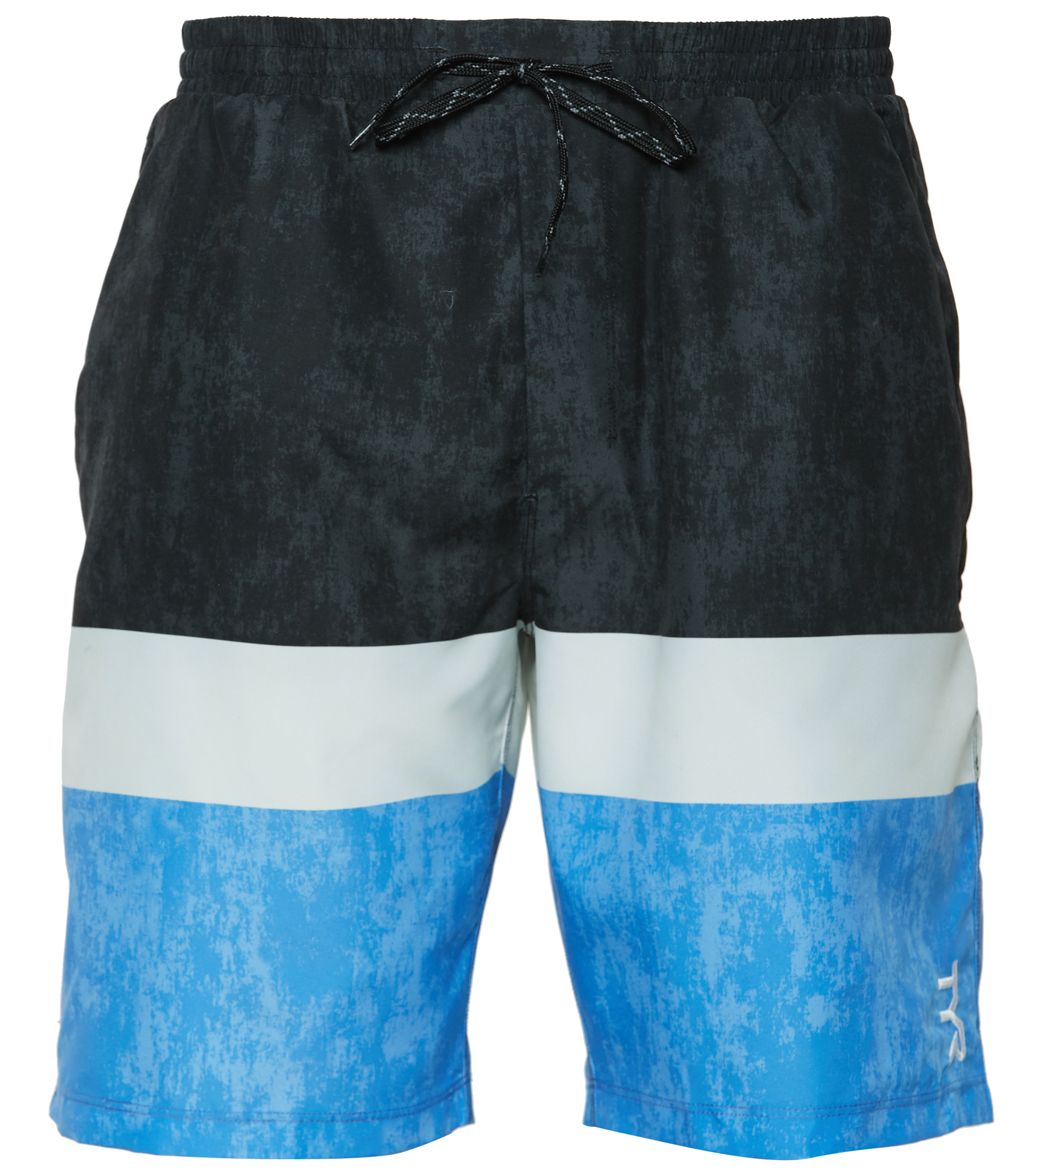 TYR Men's Shoreline Swell Swim Short - Black/White/Blue Xxl - Swimoutlet.com